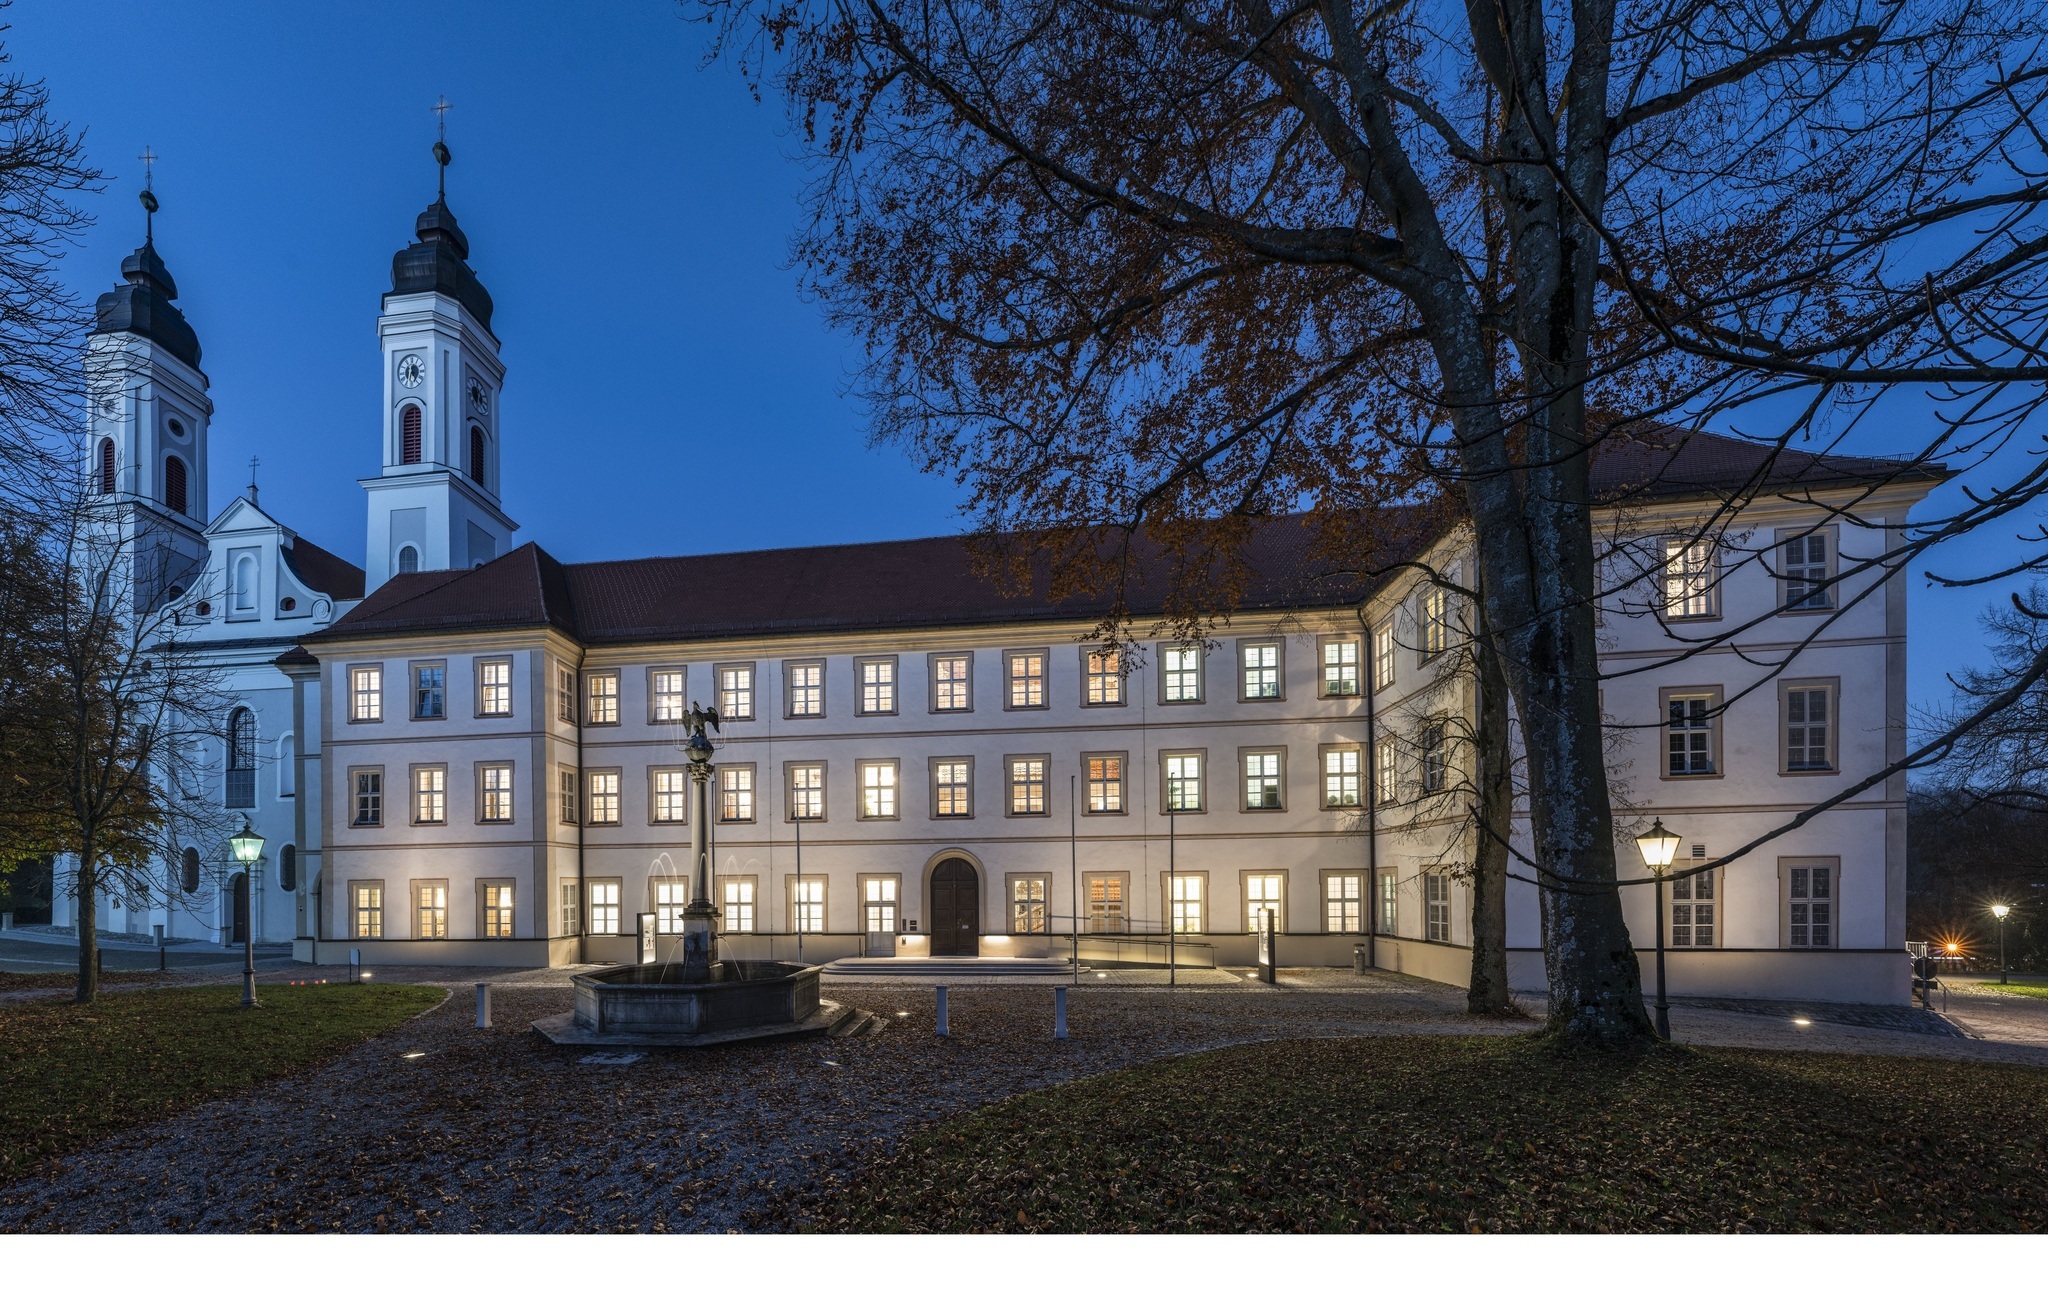 Kloster Irsee - ©Achim Bunz